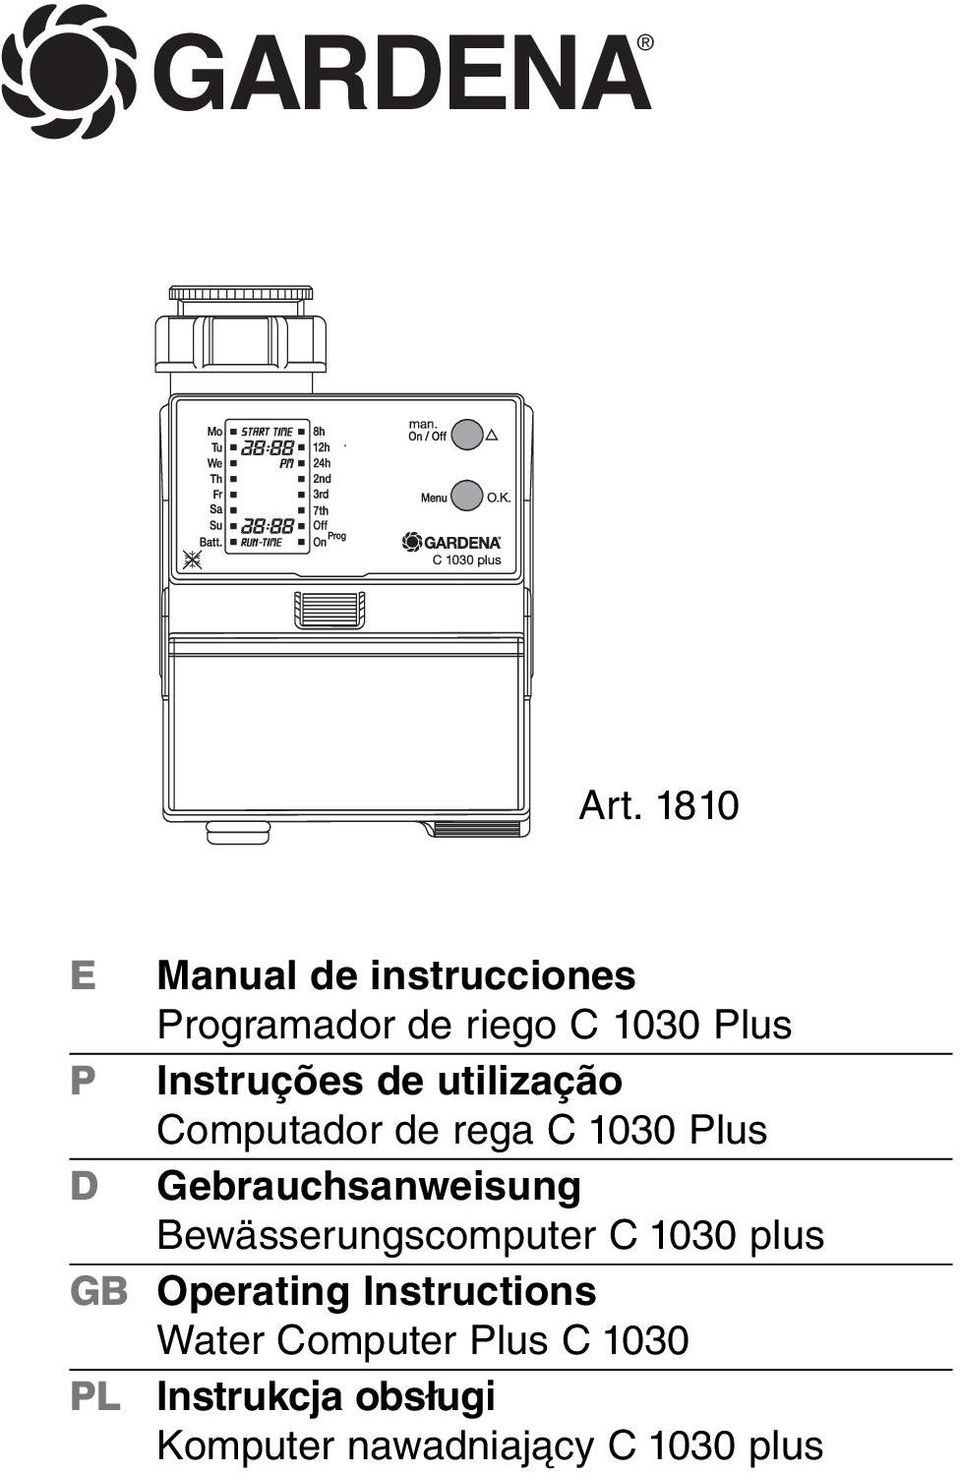 Instruções de utilização Computador de rega C 1030 Plus D